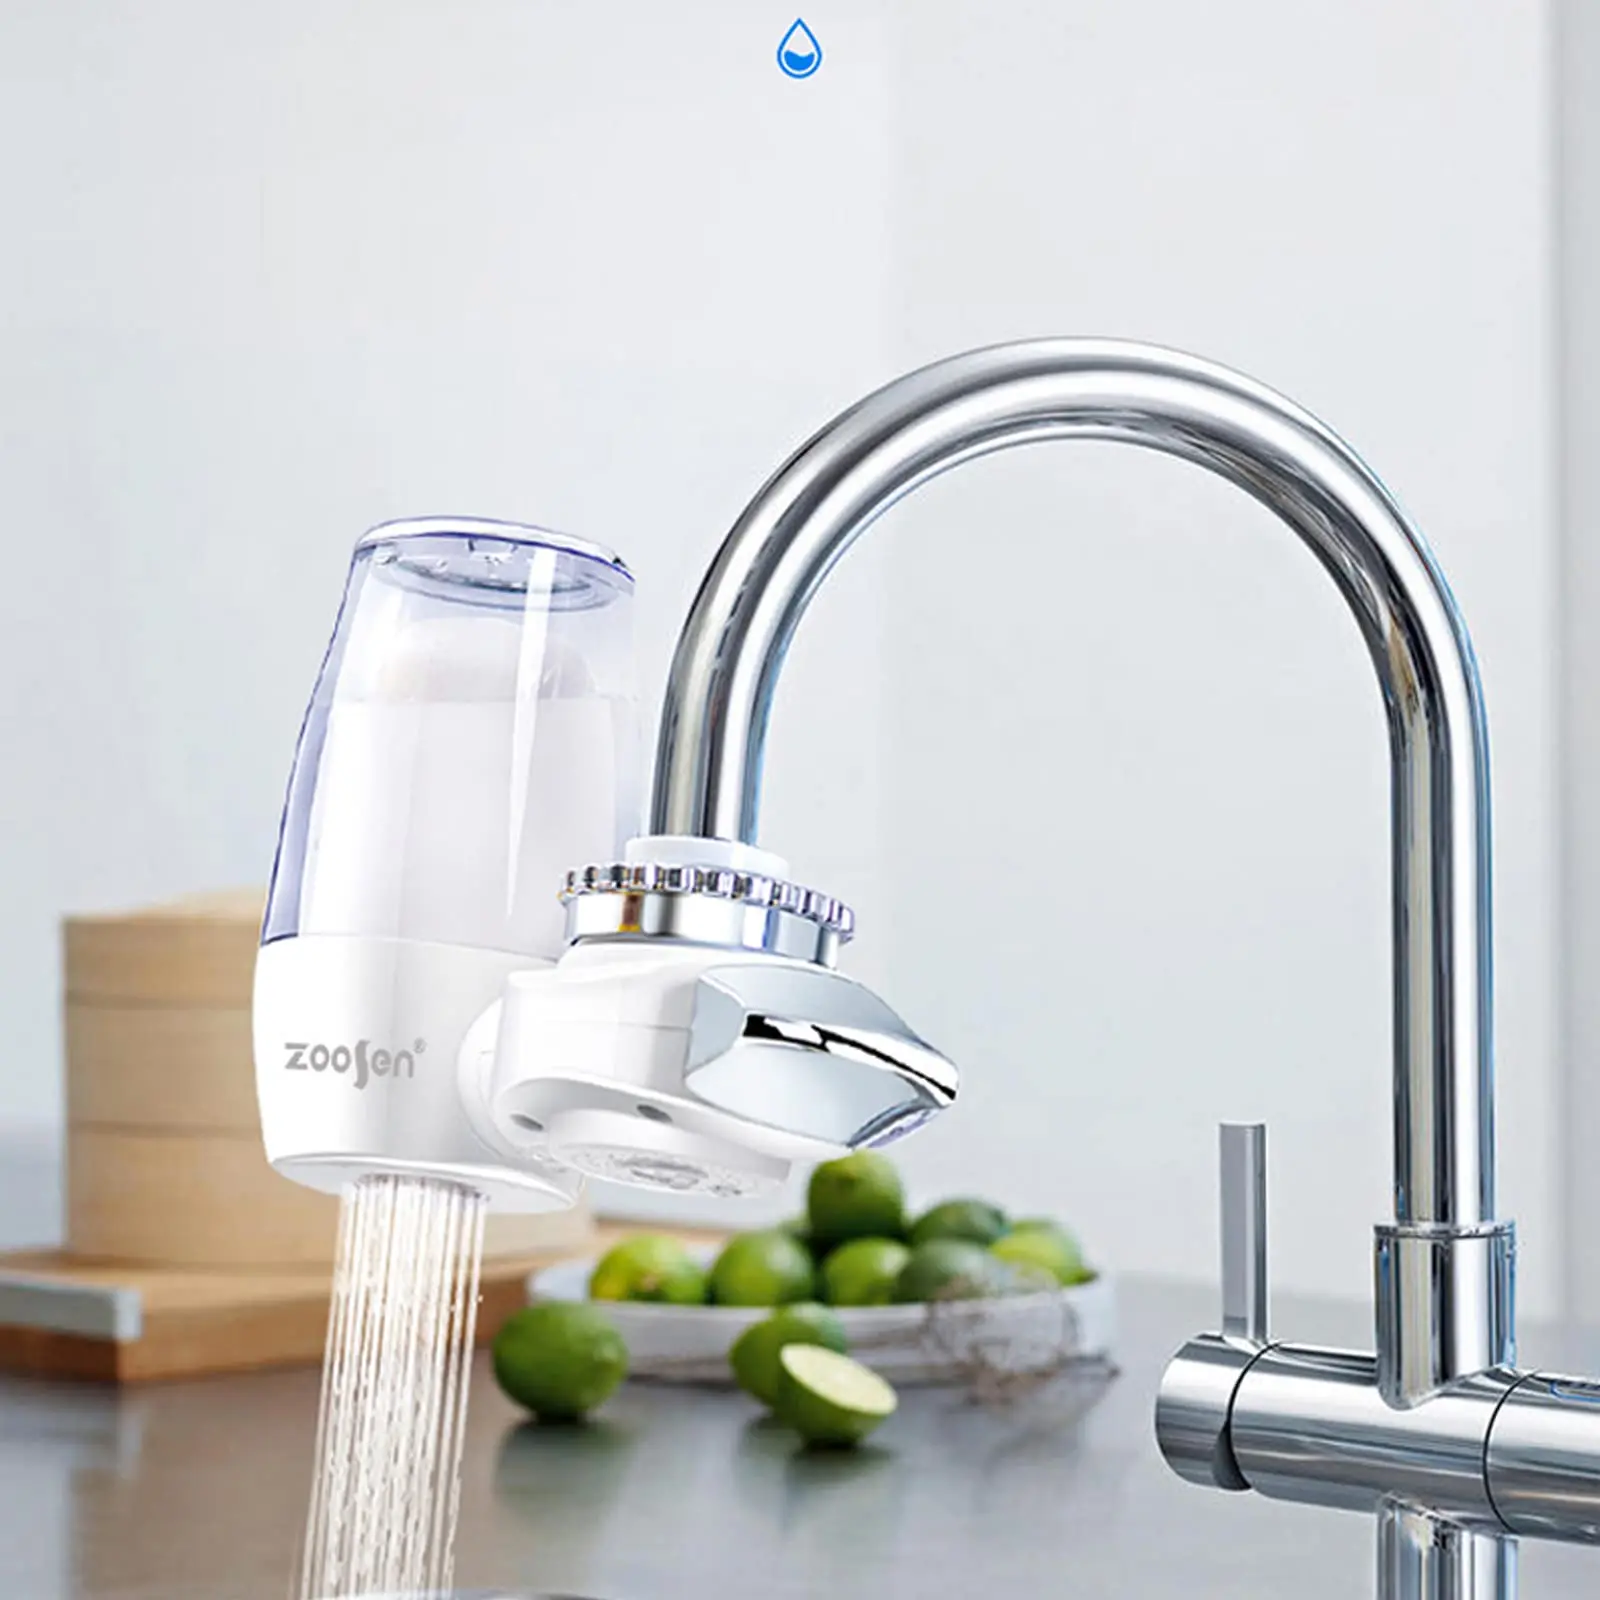 filtro de agua para grifo de cocina - Cuáles son los mejores filtros de agua para el hogar